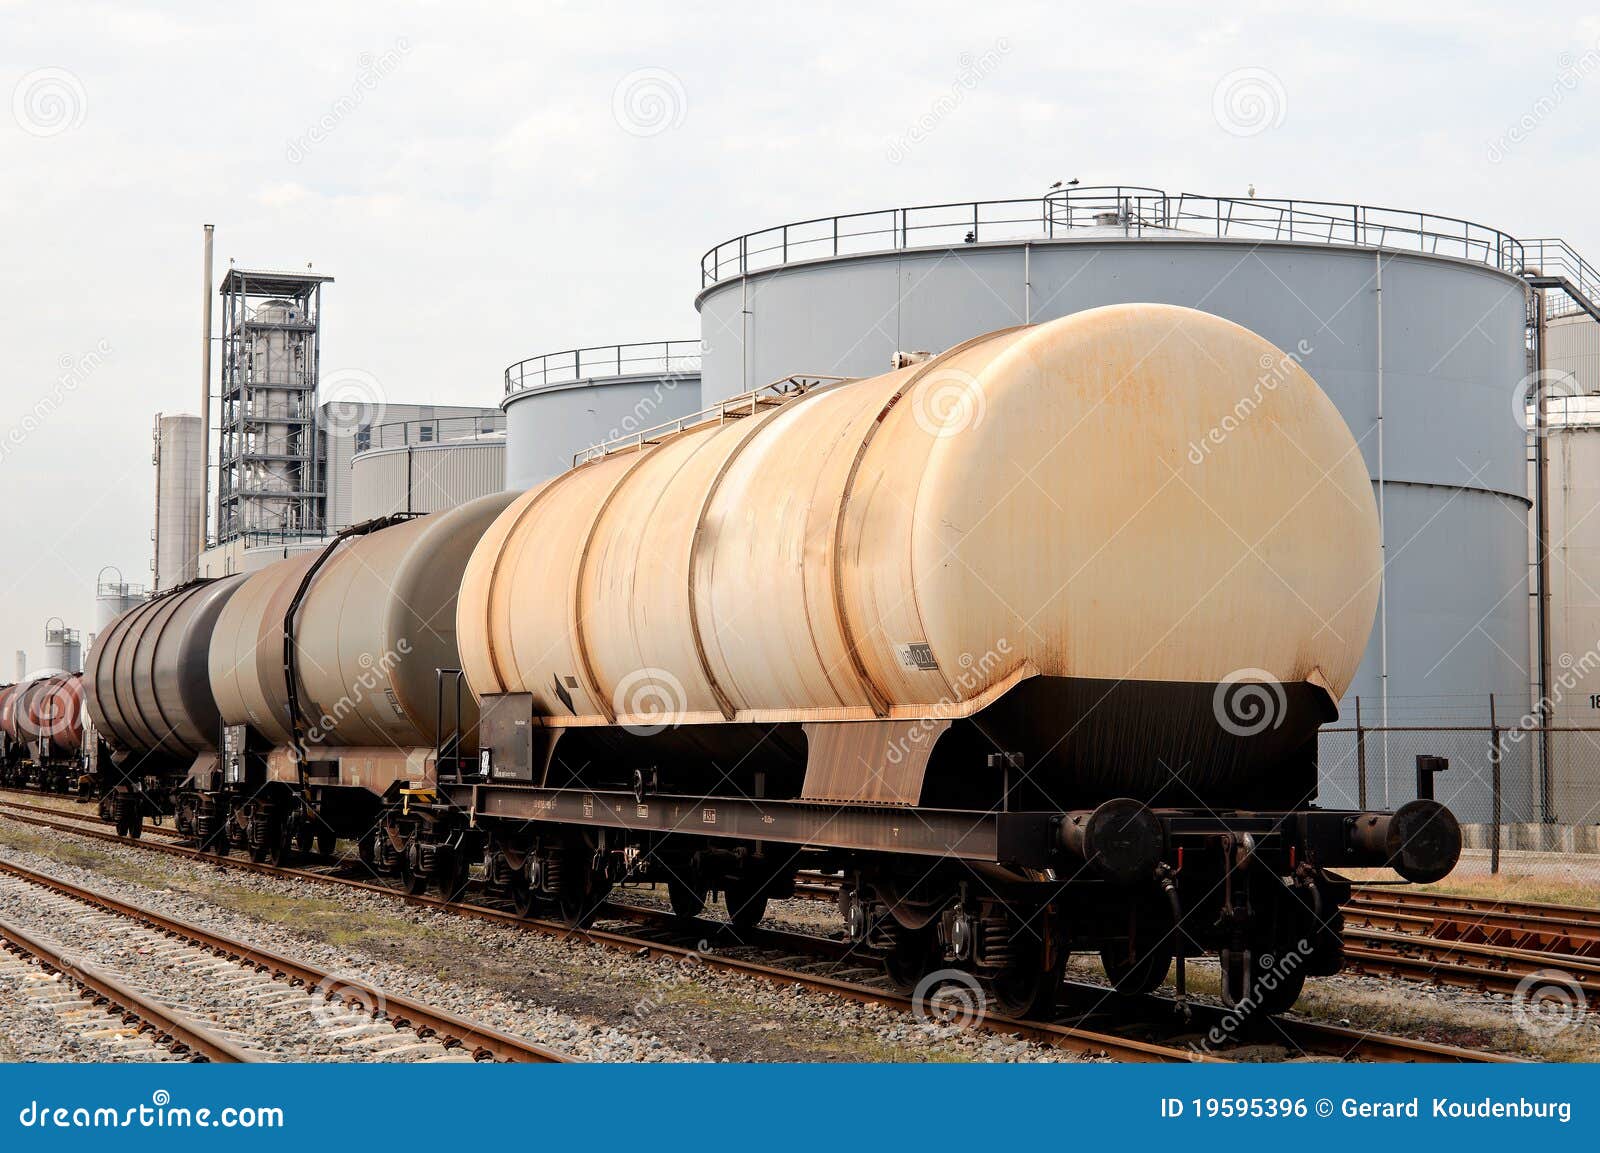 oil depot and liquid train car